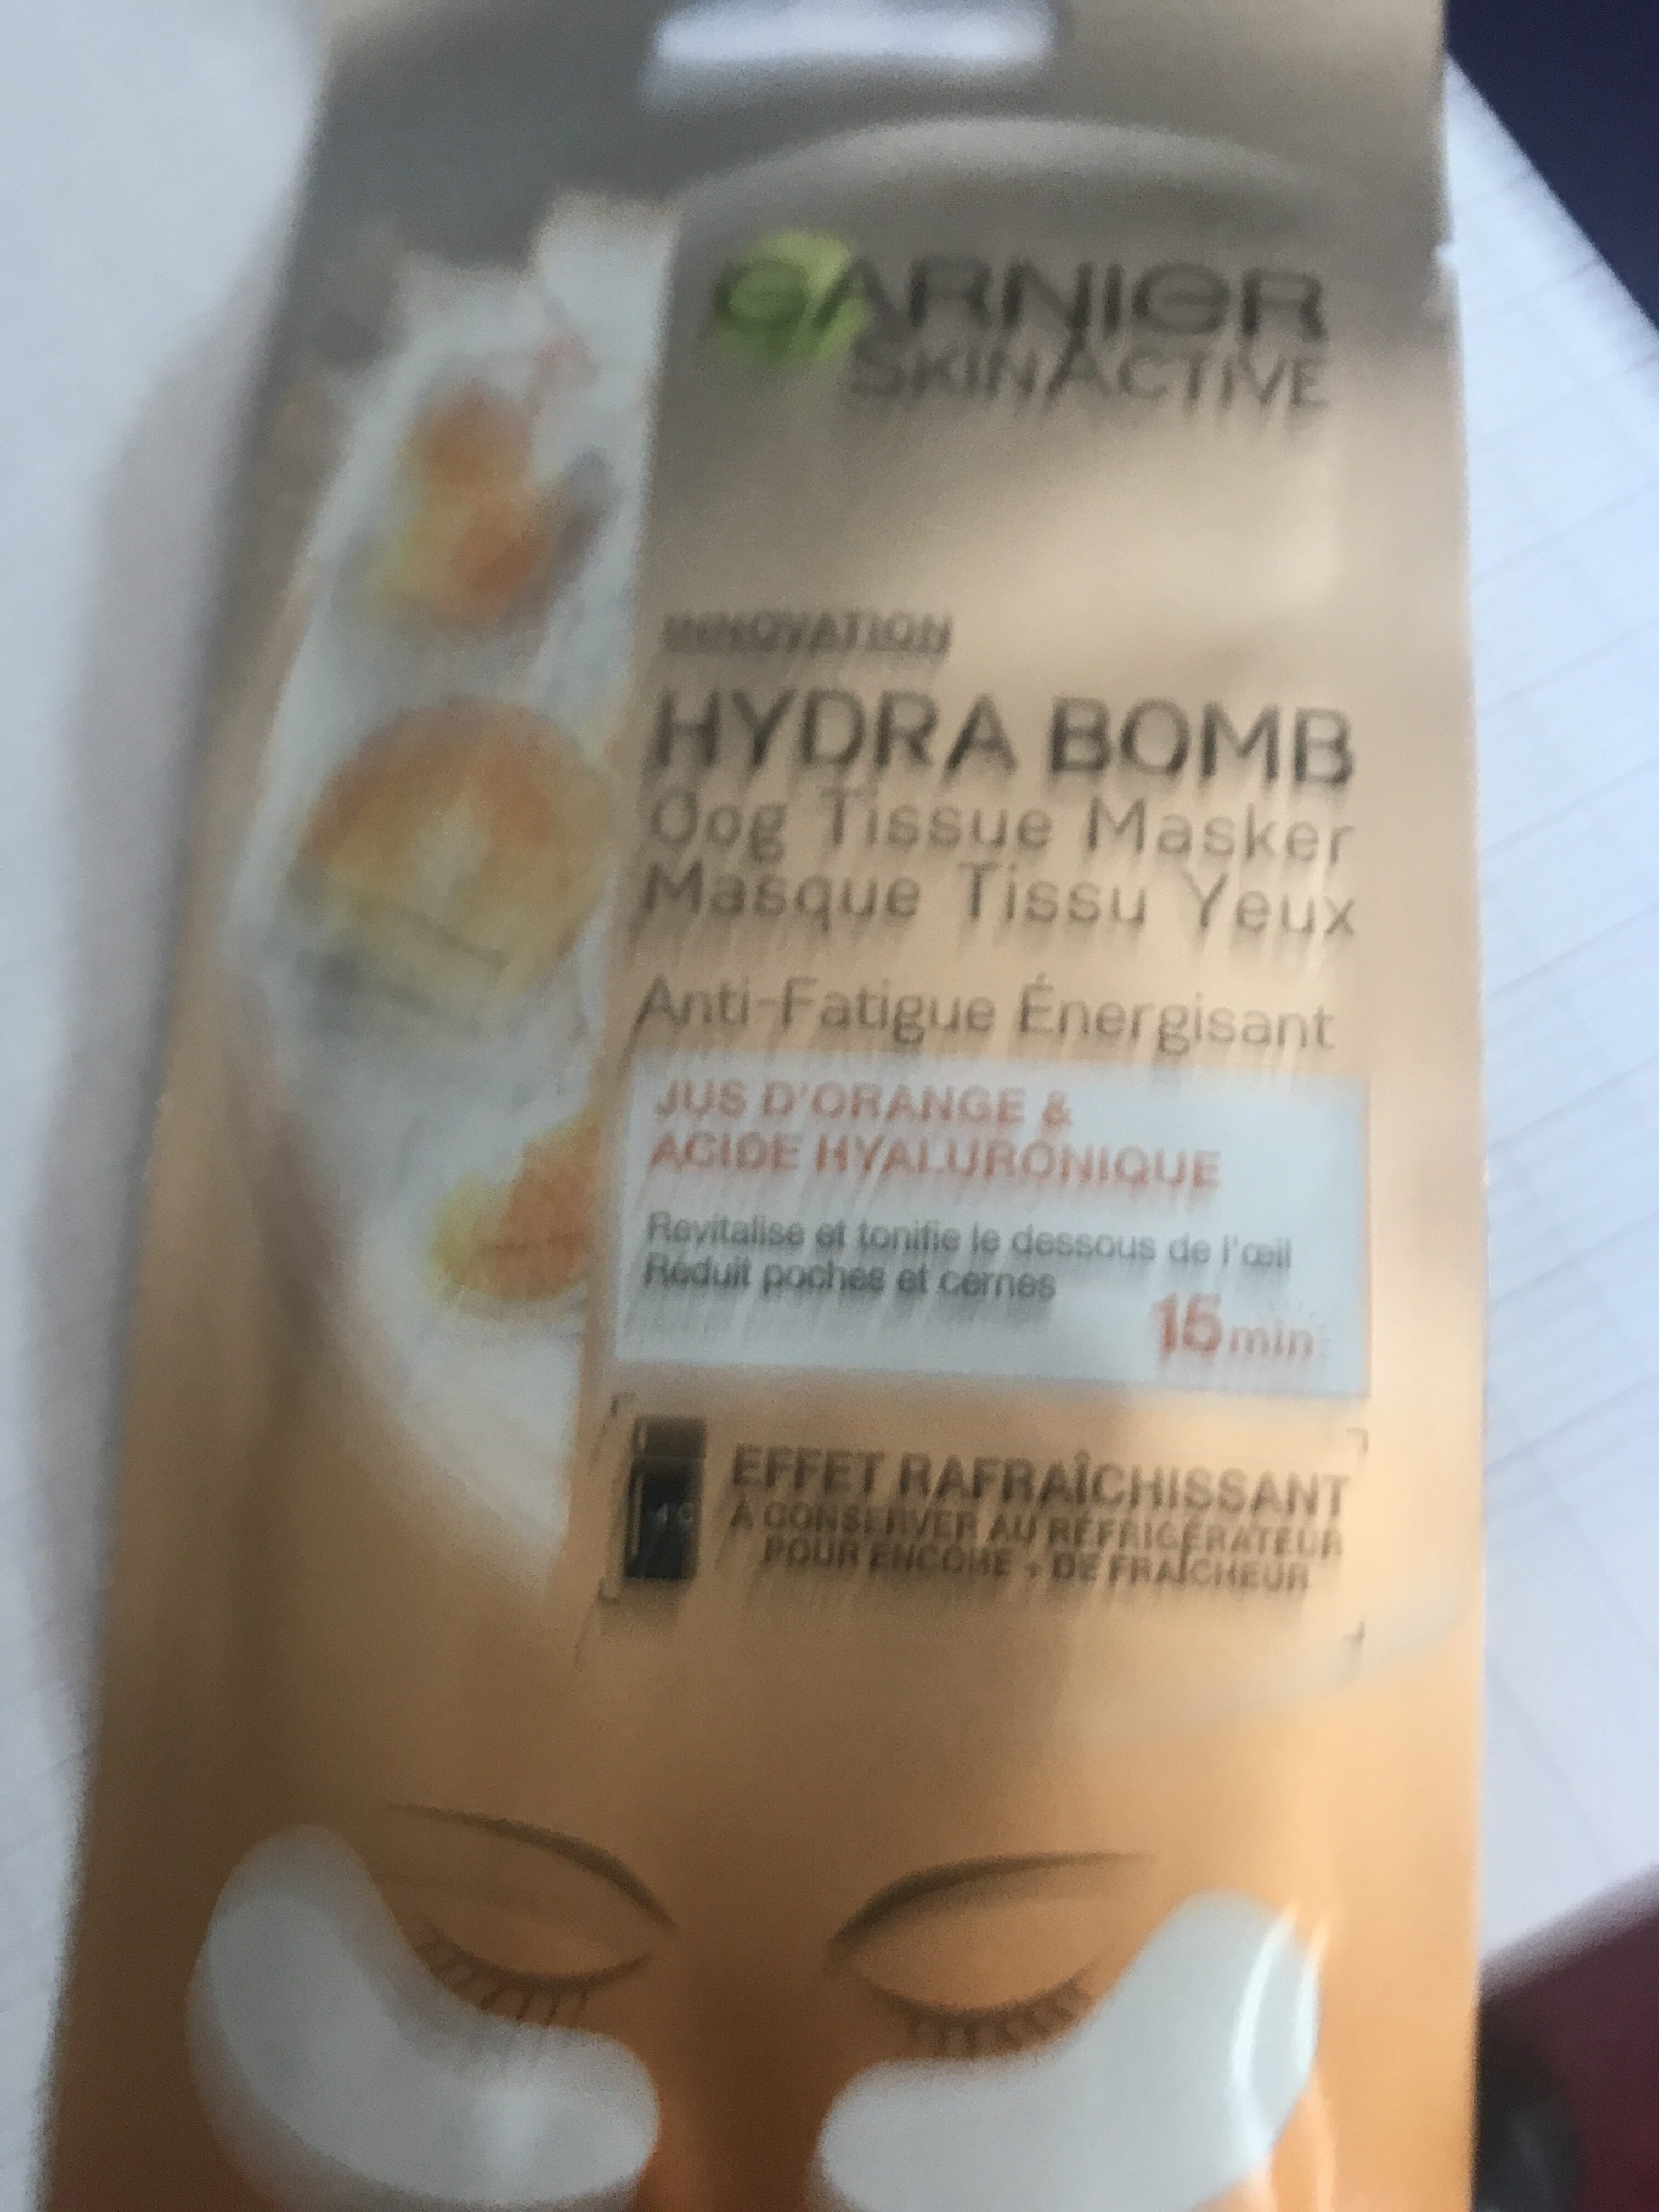 SkinActive Hydra Bomb Eye Masque, x2 - Produkt - en